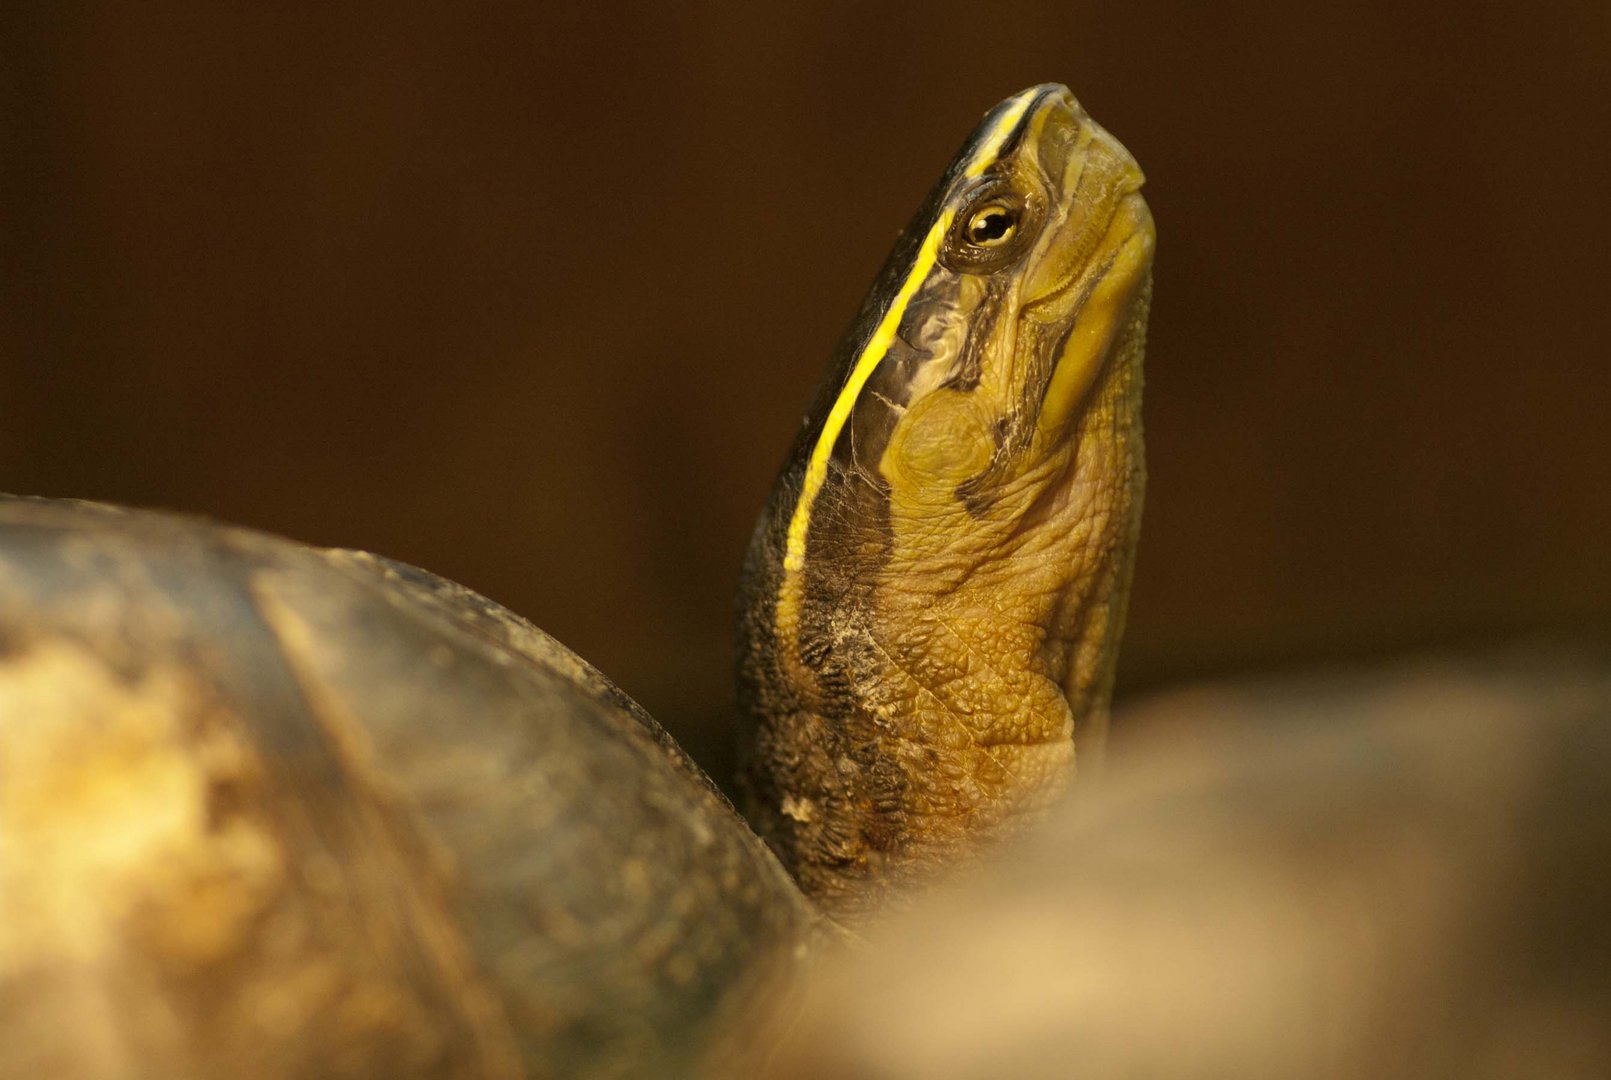 Ambonia-Dosenschildkröte - fotografiert im Neu-Ulmer Terrarium